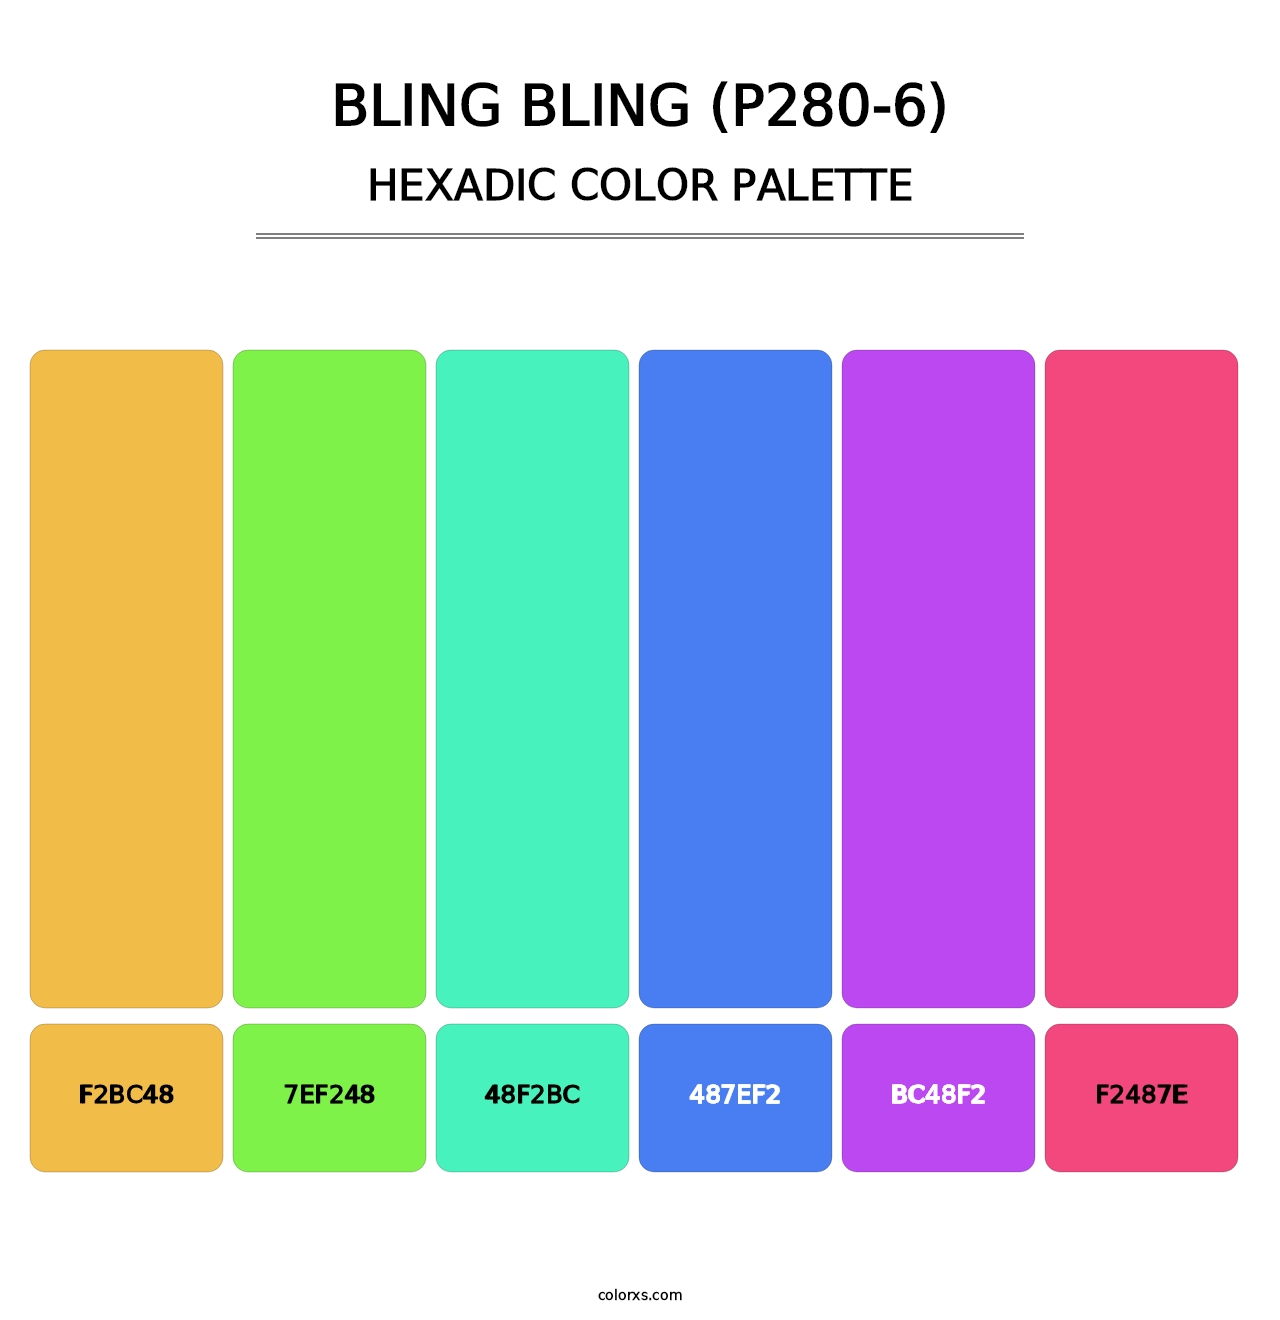 Bling Bling (P280-6) - Hexadic Color Palette